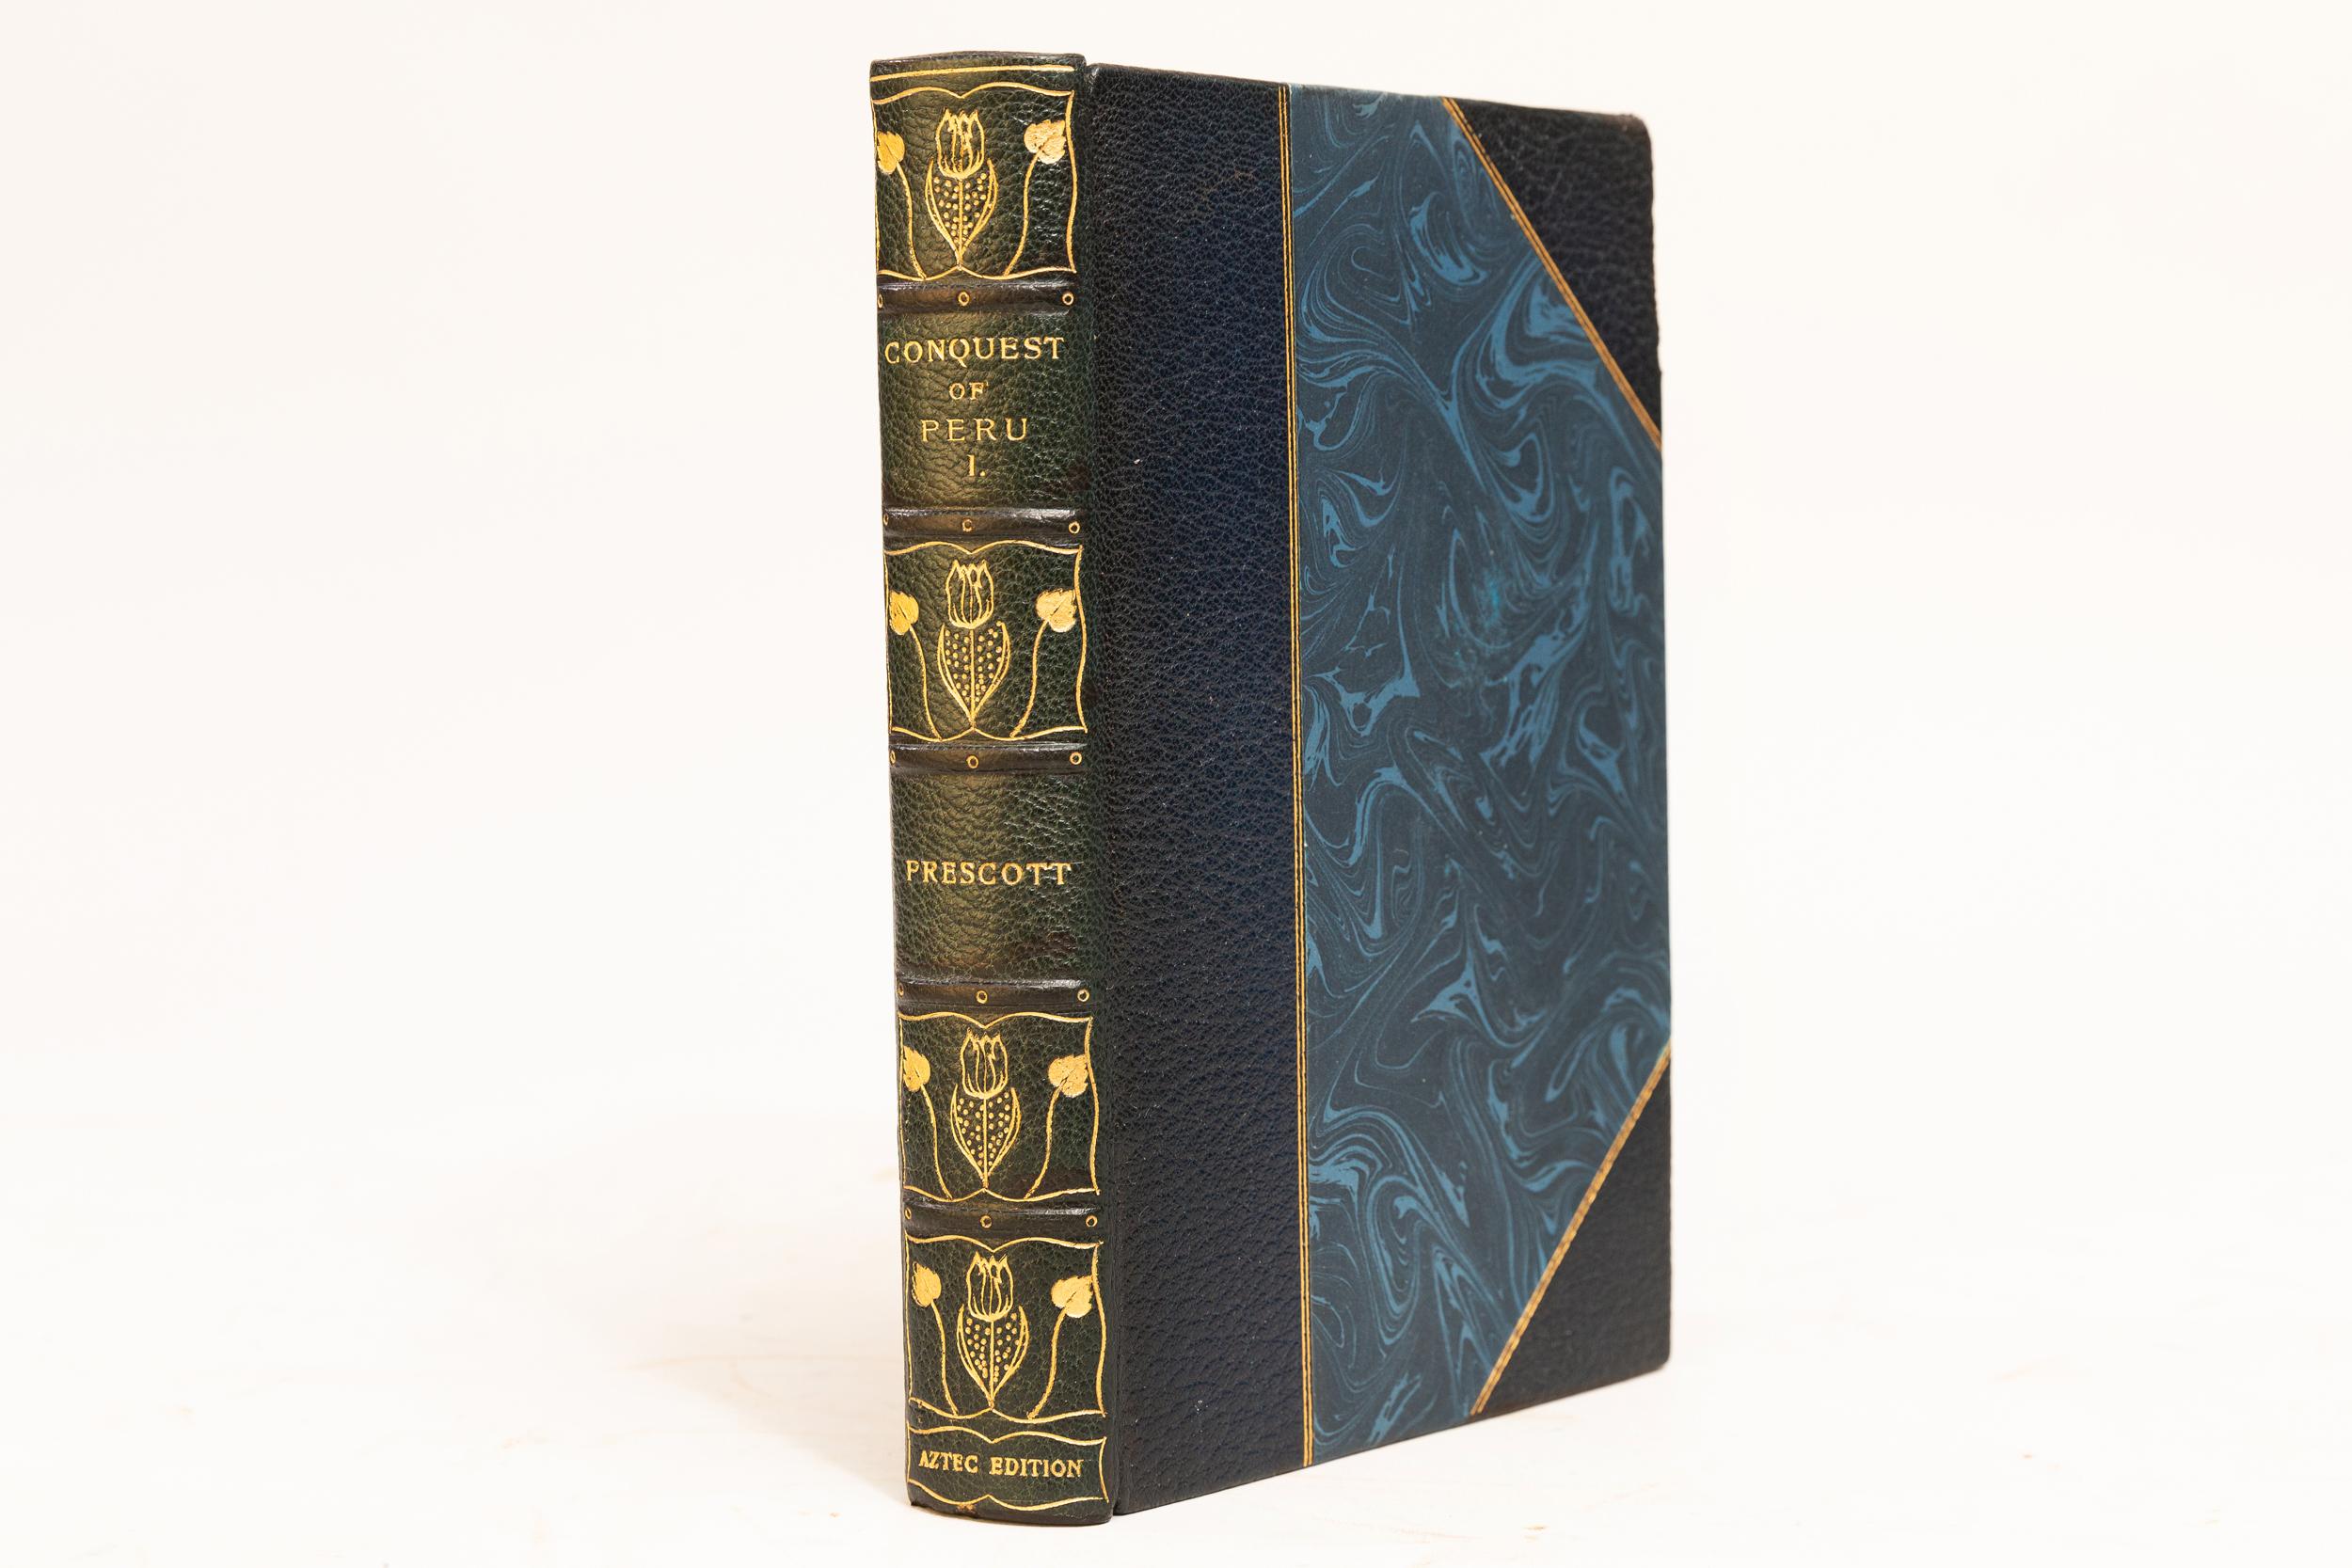 Leather 22 Volumes. William H. Prescott, The Works of William H. Prescott